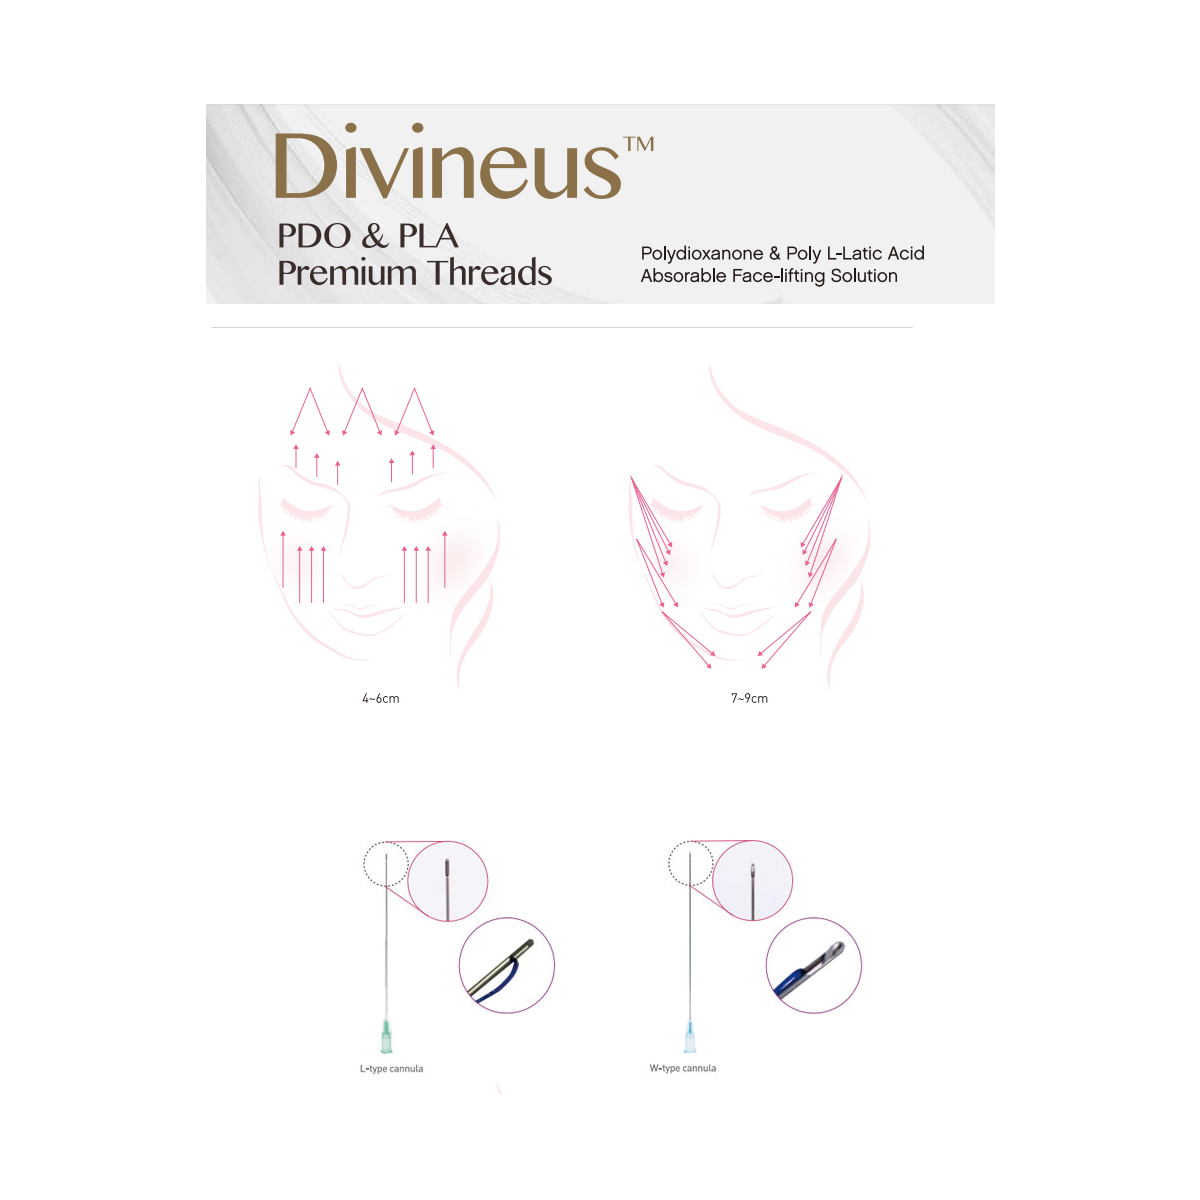 Divineus PDO Moulding (Döküm) Cog Threads